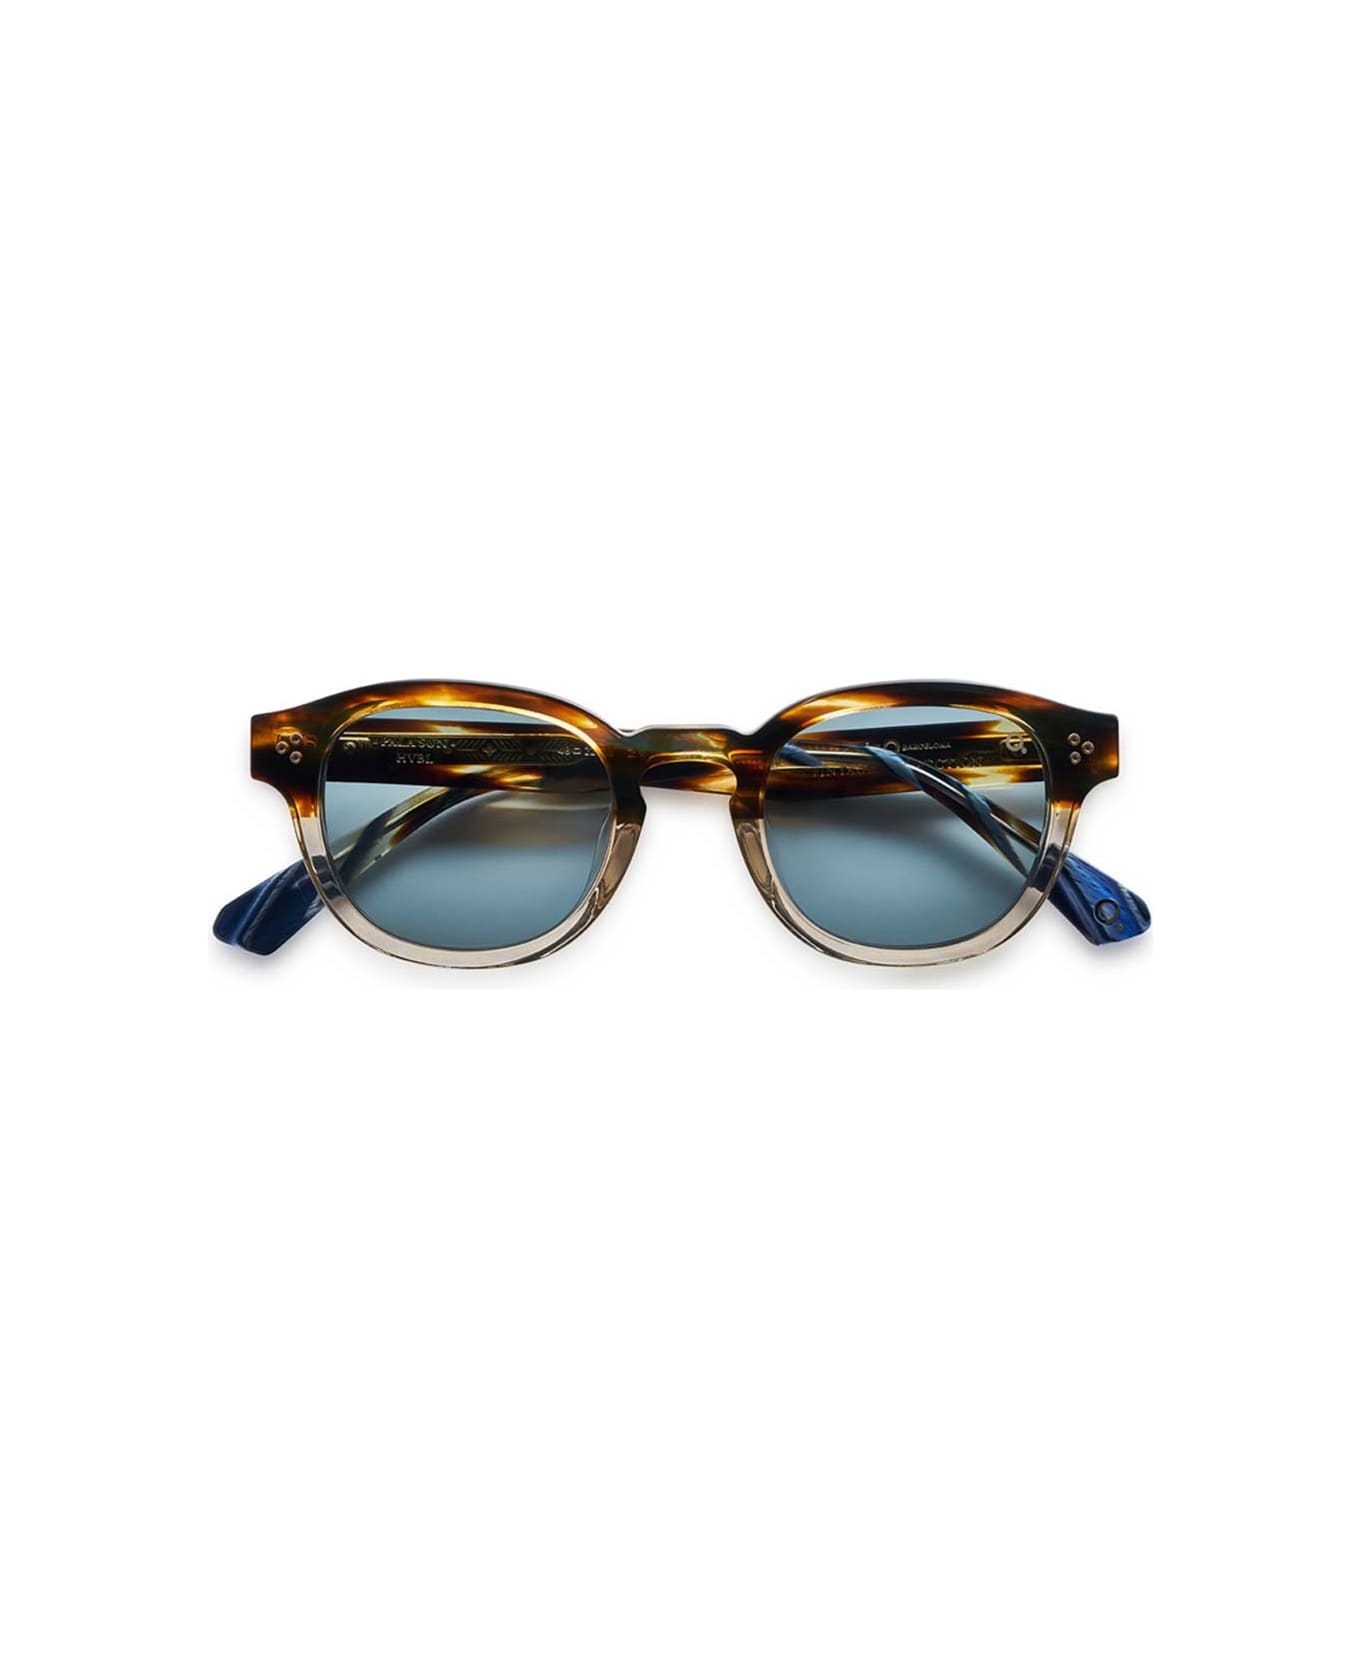 Etnia Barcelona Eyewear - Marrone/Blu